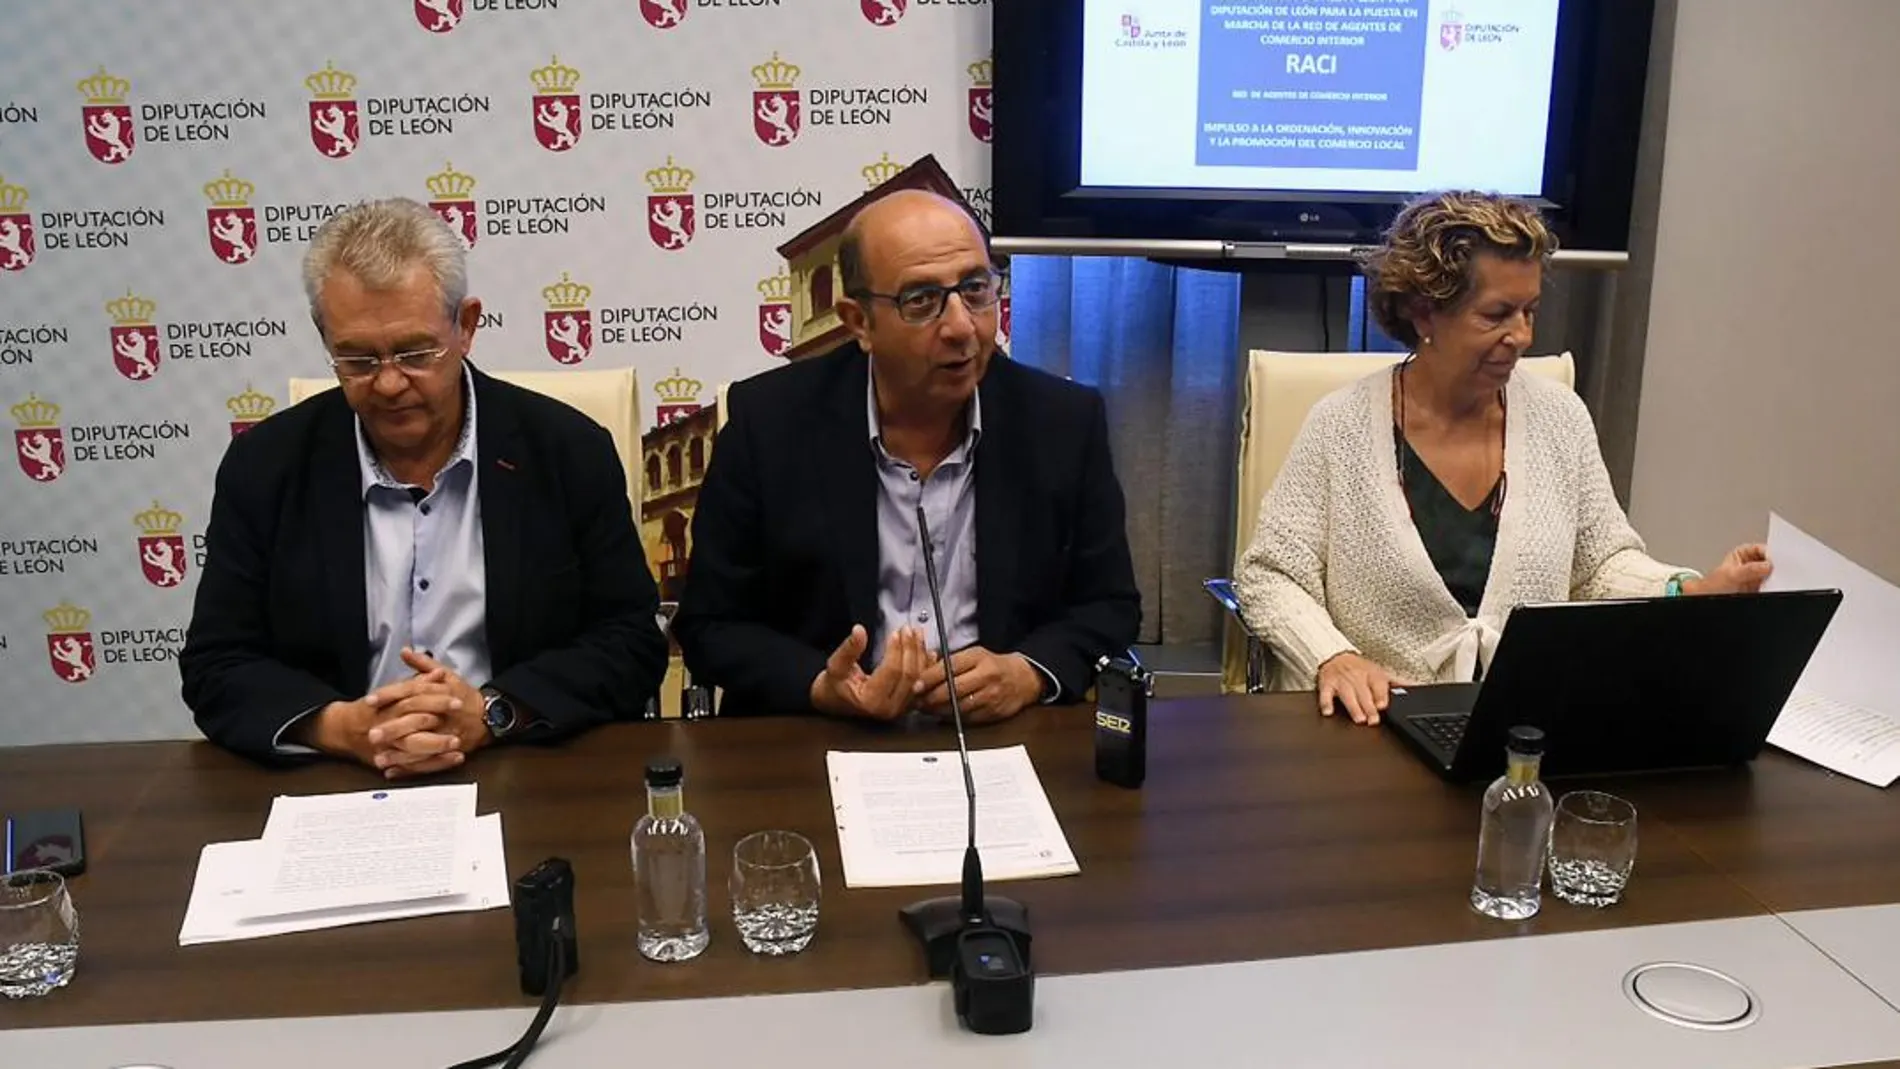 Francisco Castañón, José Miguel Nieto y Rosario Teresa presentan este informe